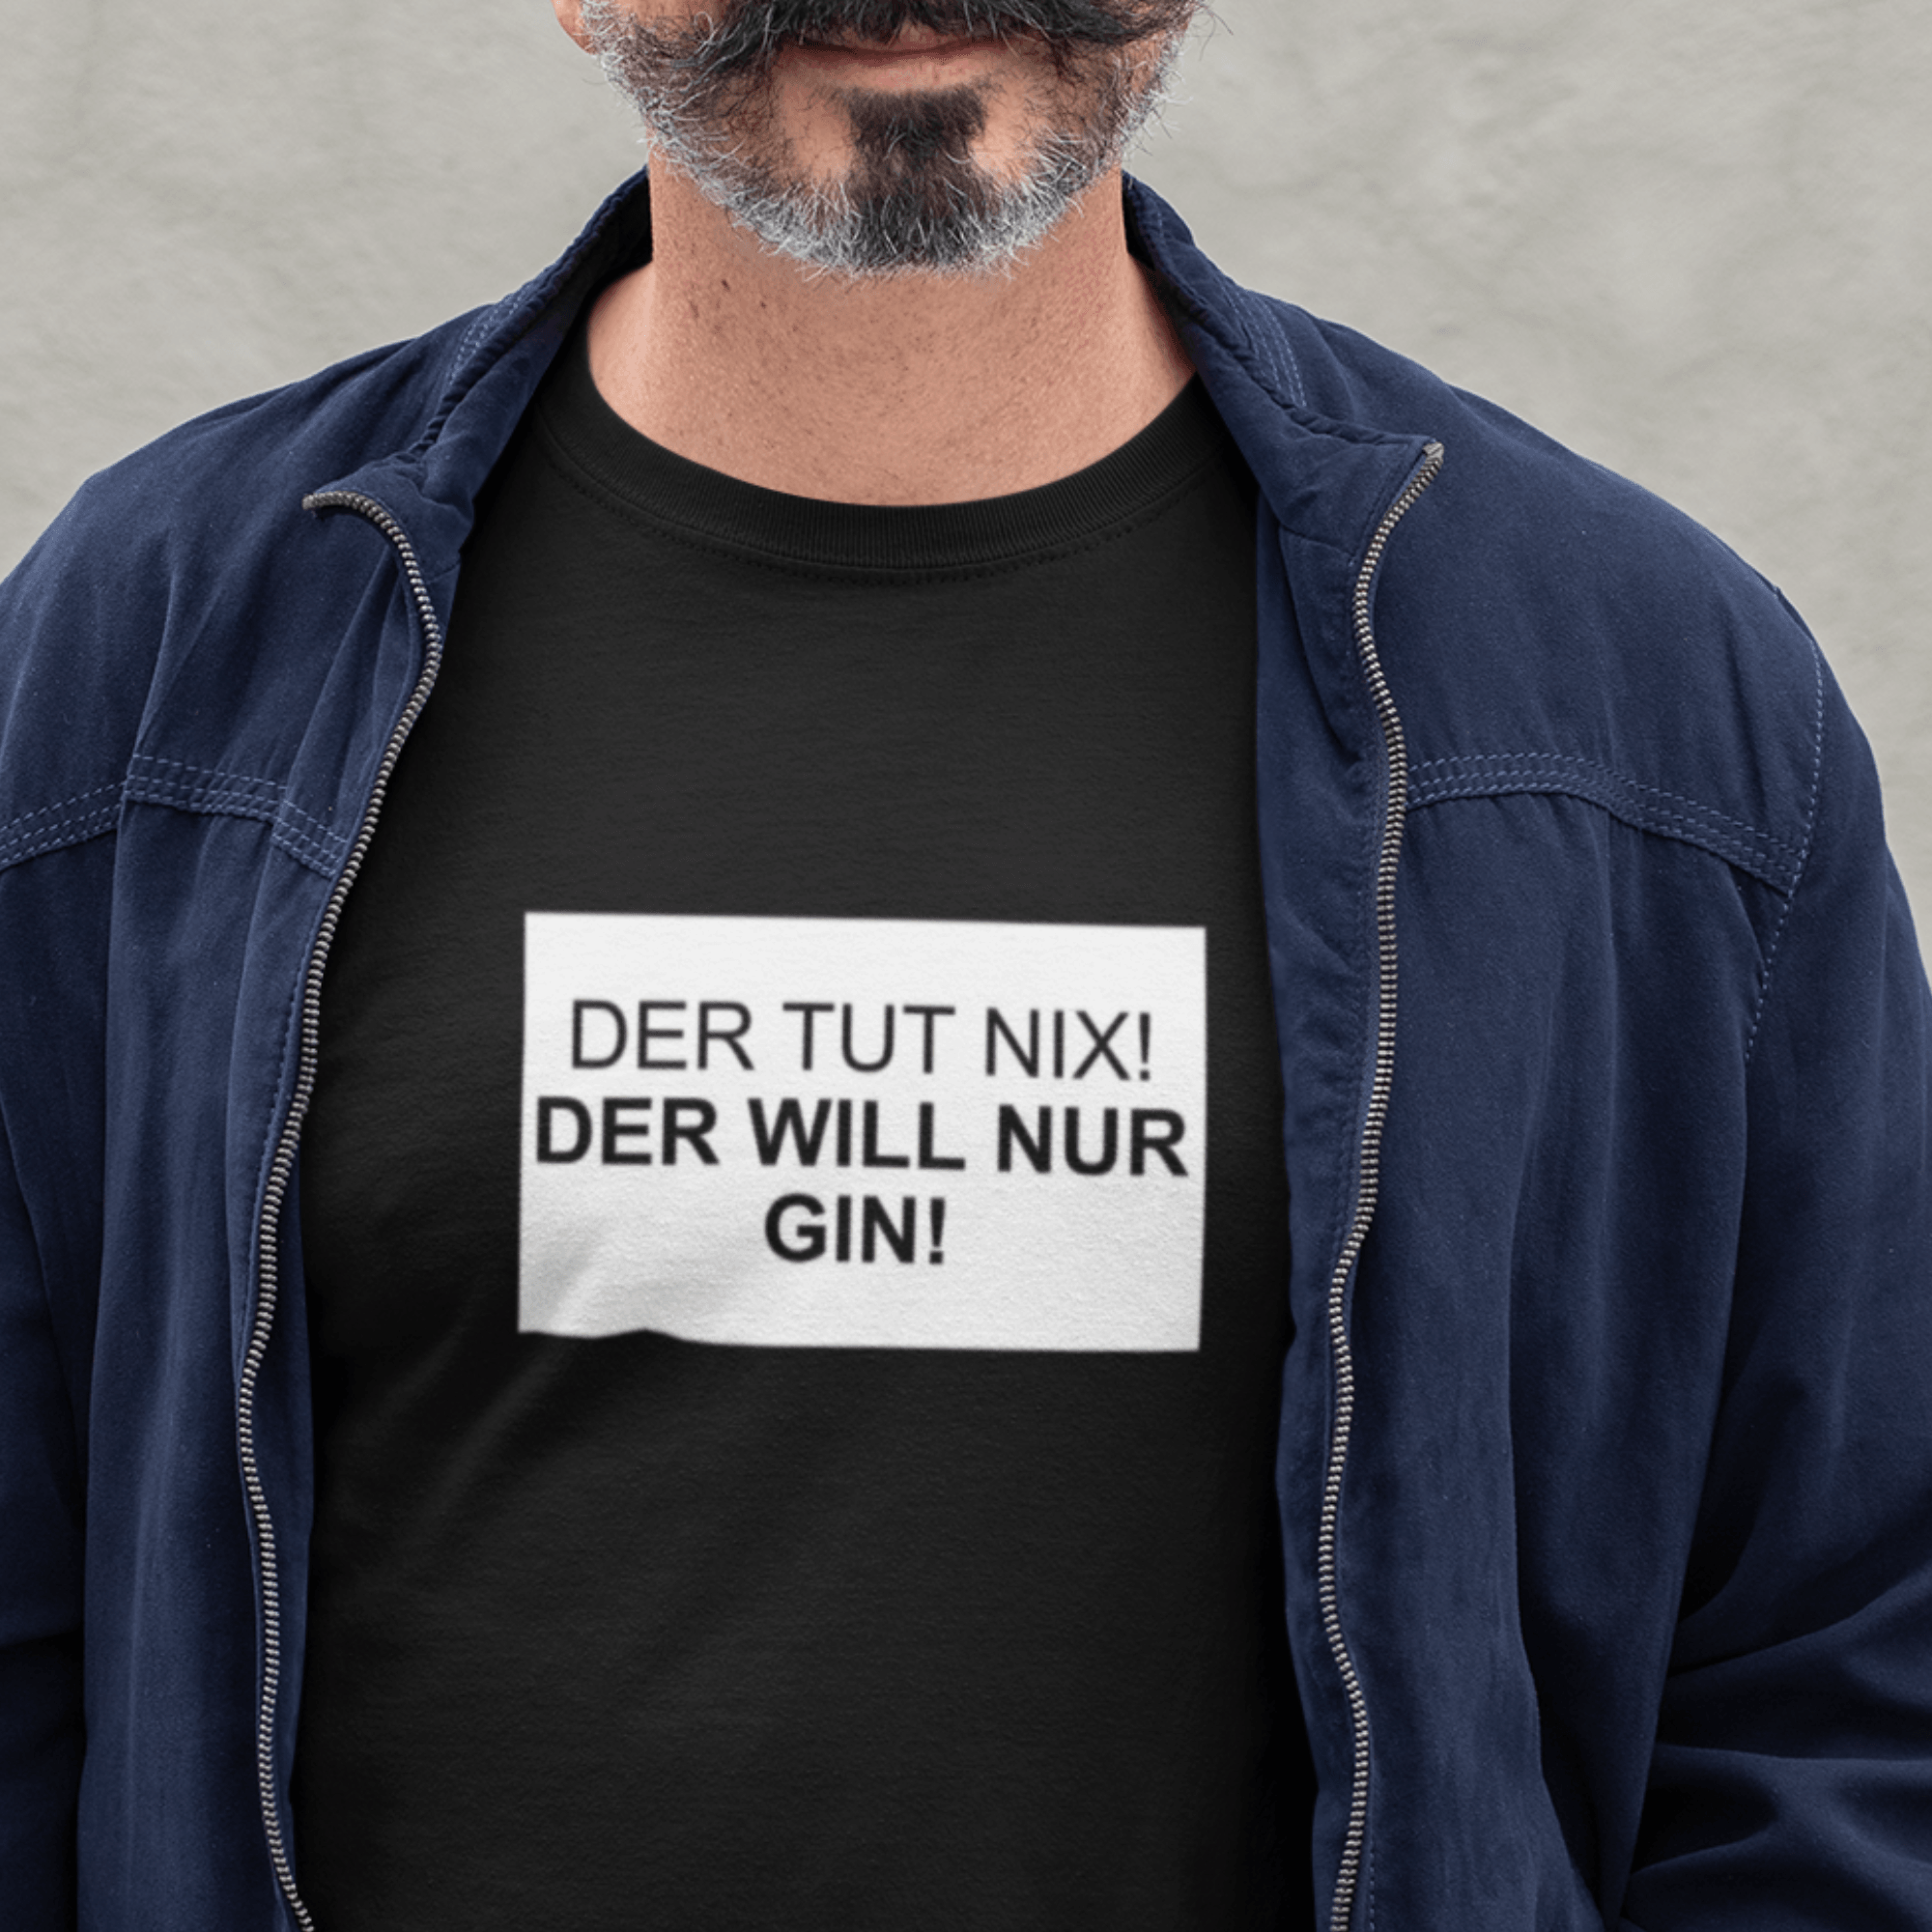 DER TUT NIX! GIN - Herren Premium Organic Shirt - einschenken24.de